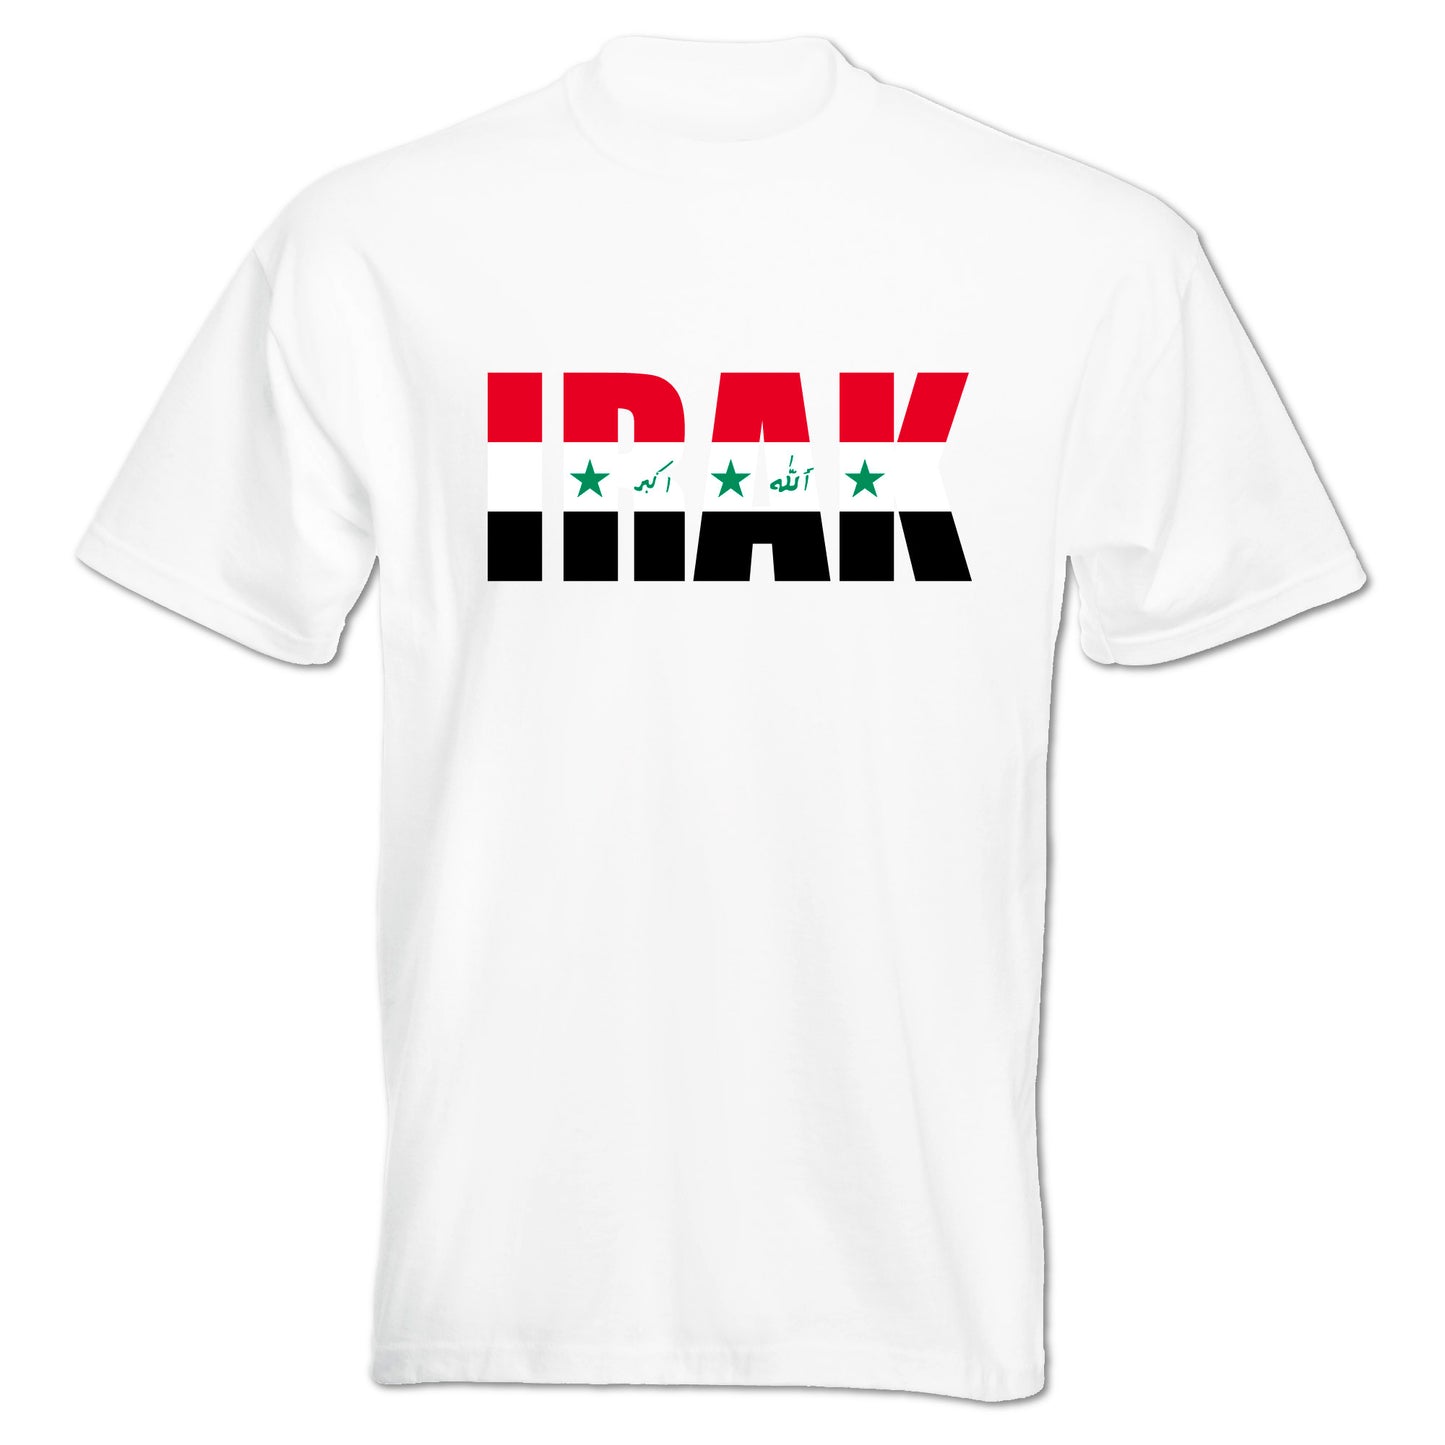 INDIGOS UG - T-Shirt Herren - Irak - Schriftzug - Fussball